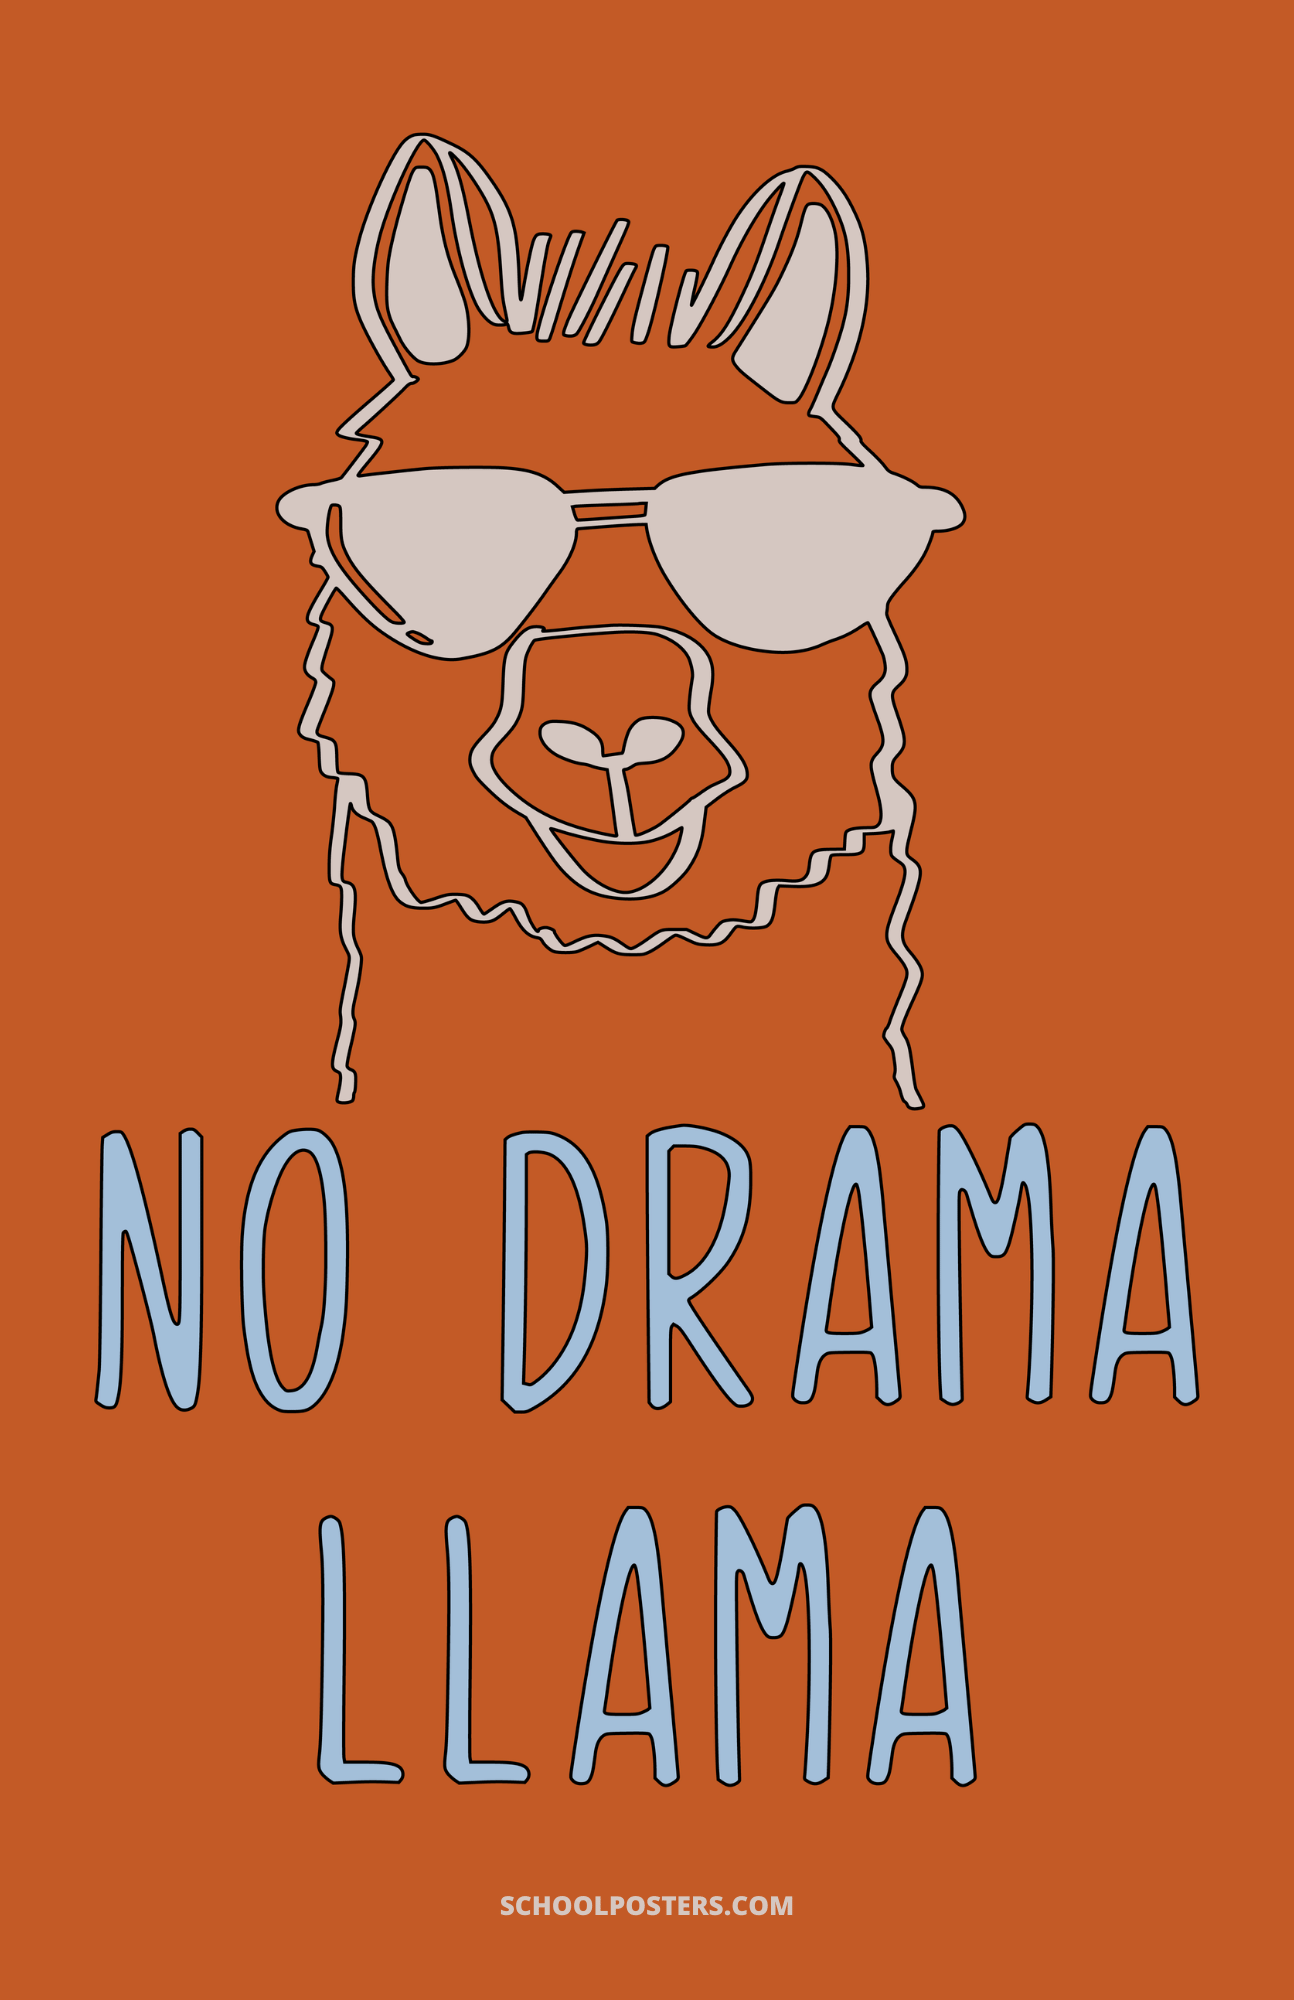 No Drama Llama Poster – SchoolPosters.com LLC